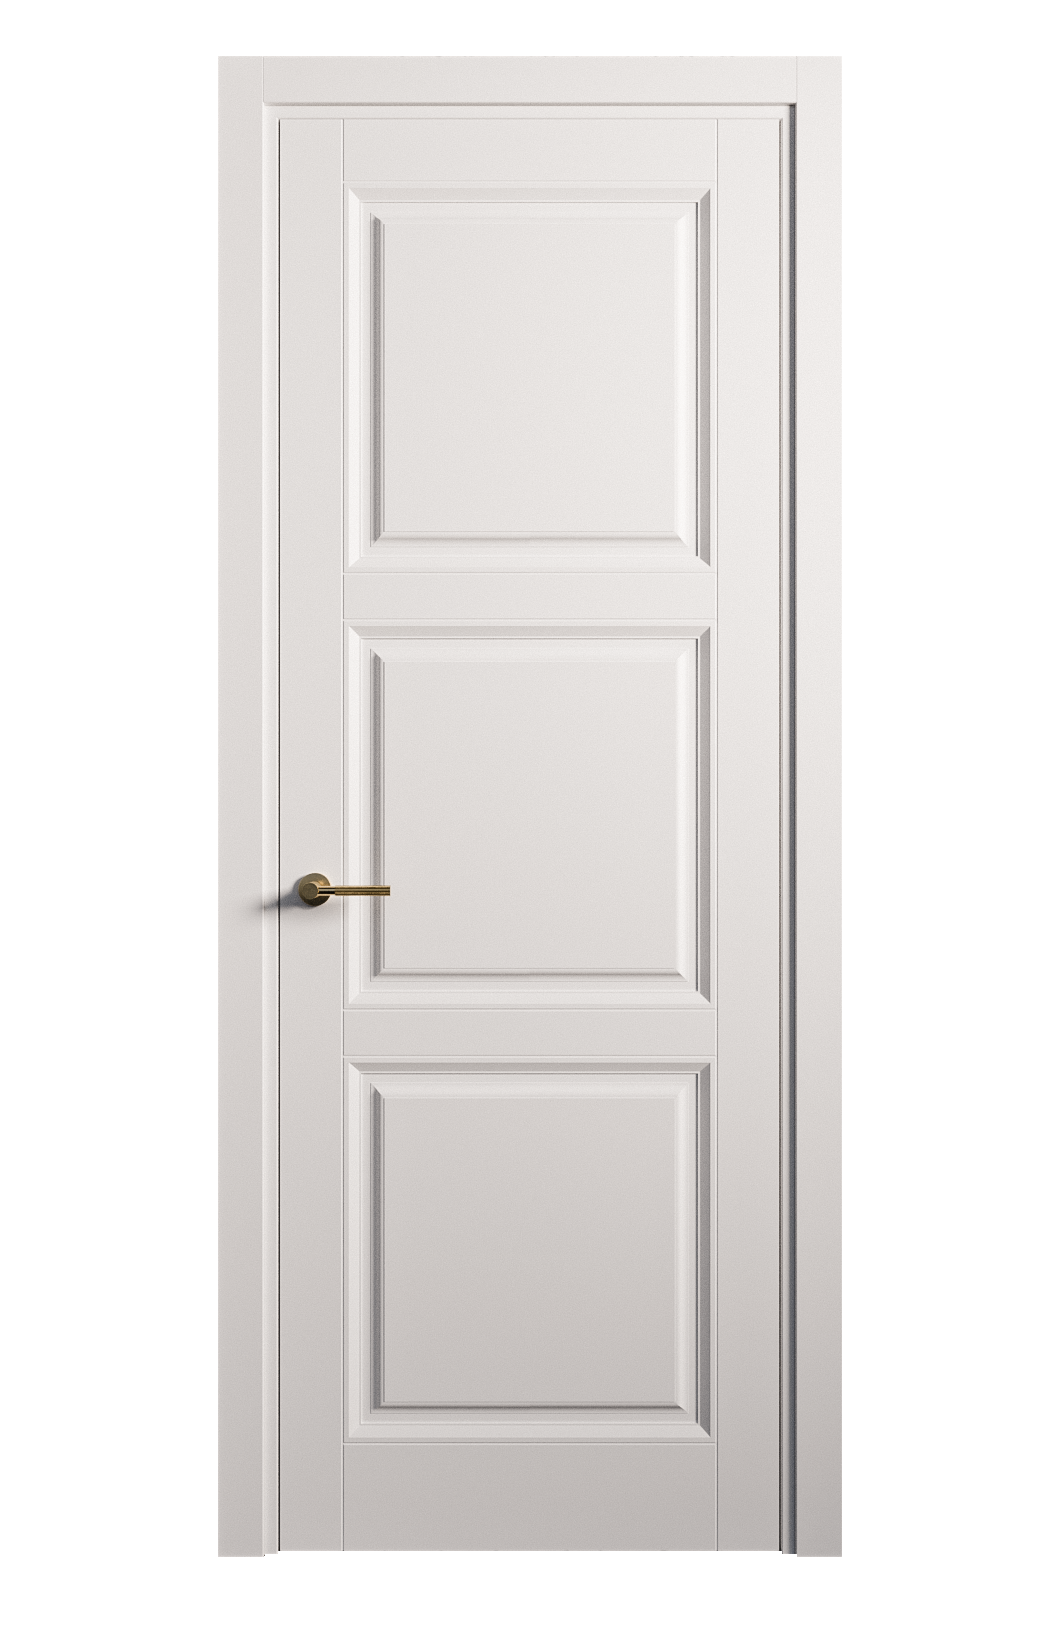 Межкомнатная дверь Venezia-3 глухая эмаль ral 9003 25781